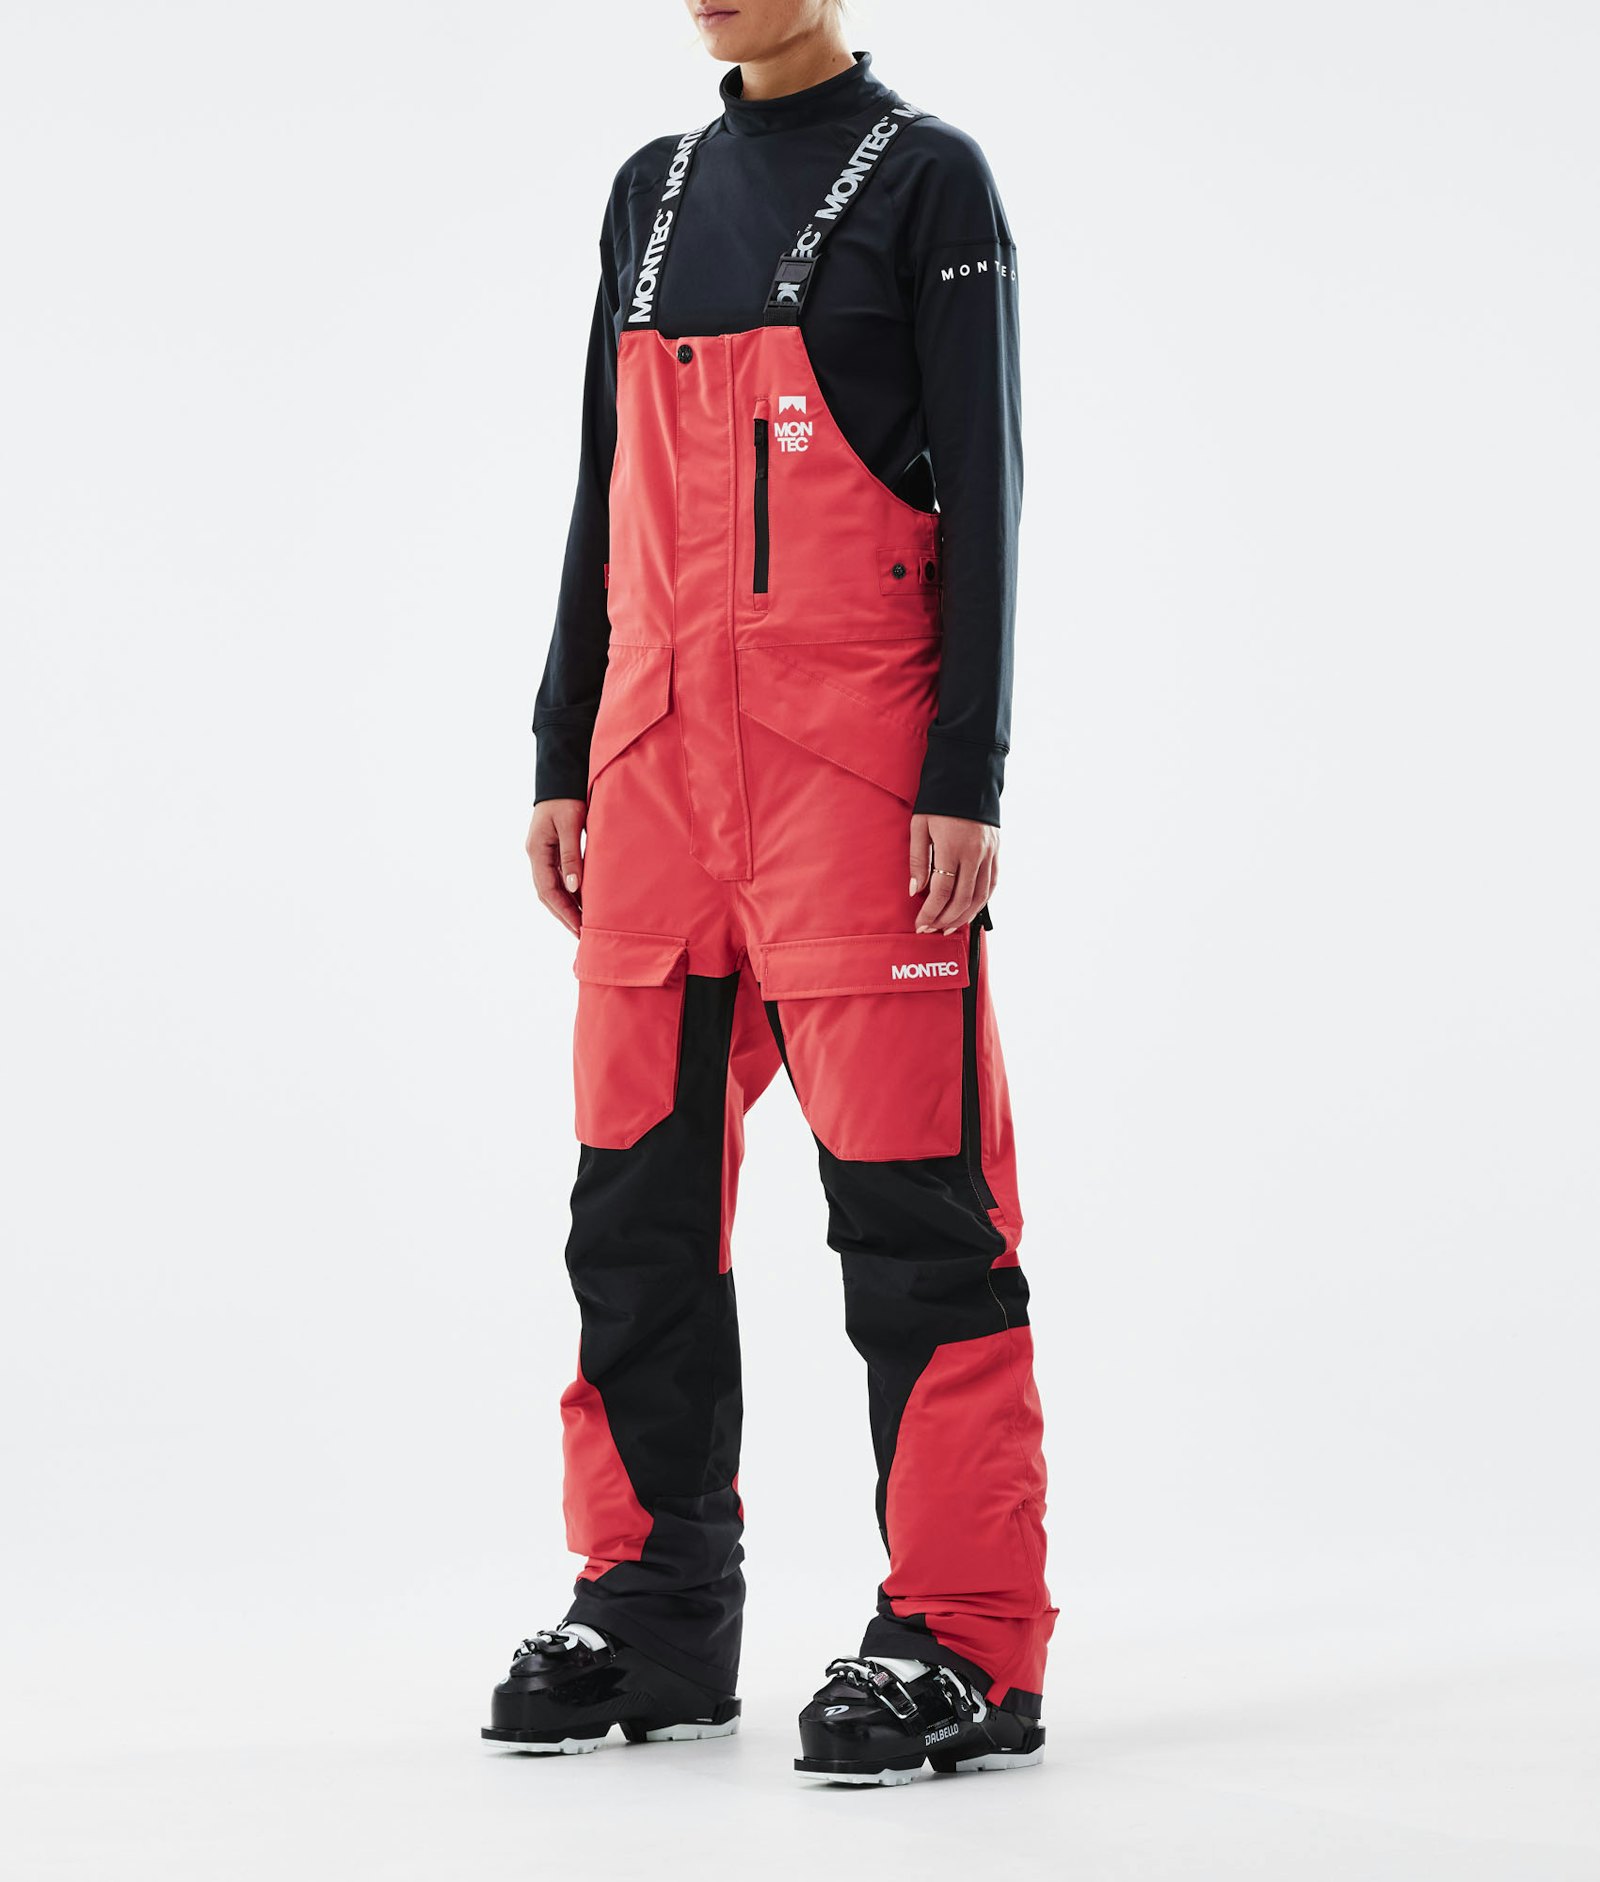 Fawk W 2021 Pantalones Esquí Mujer Coral/Black